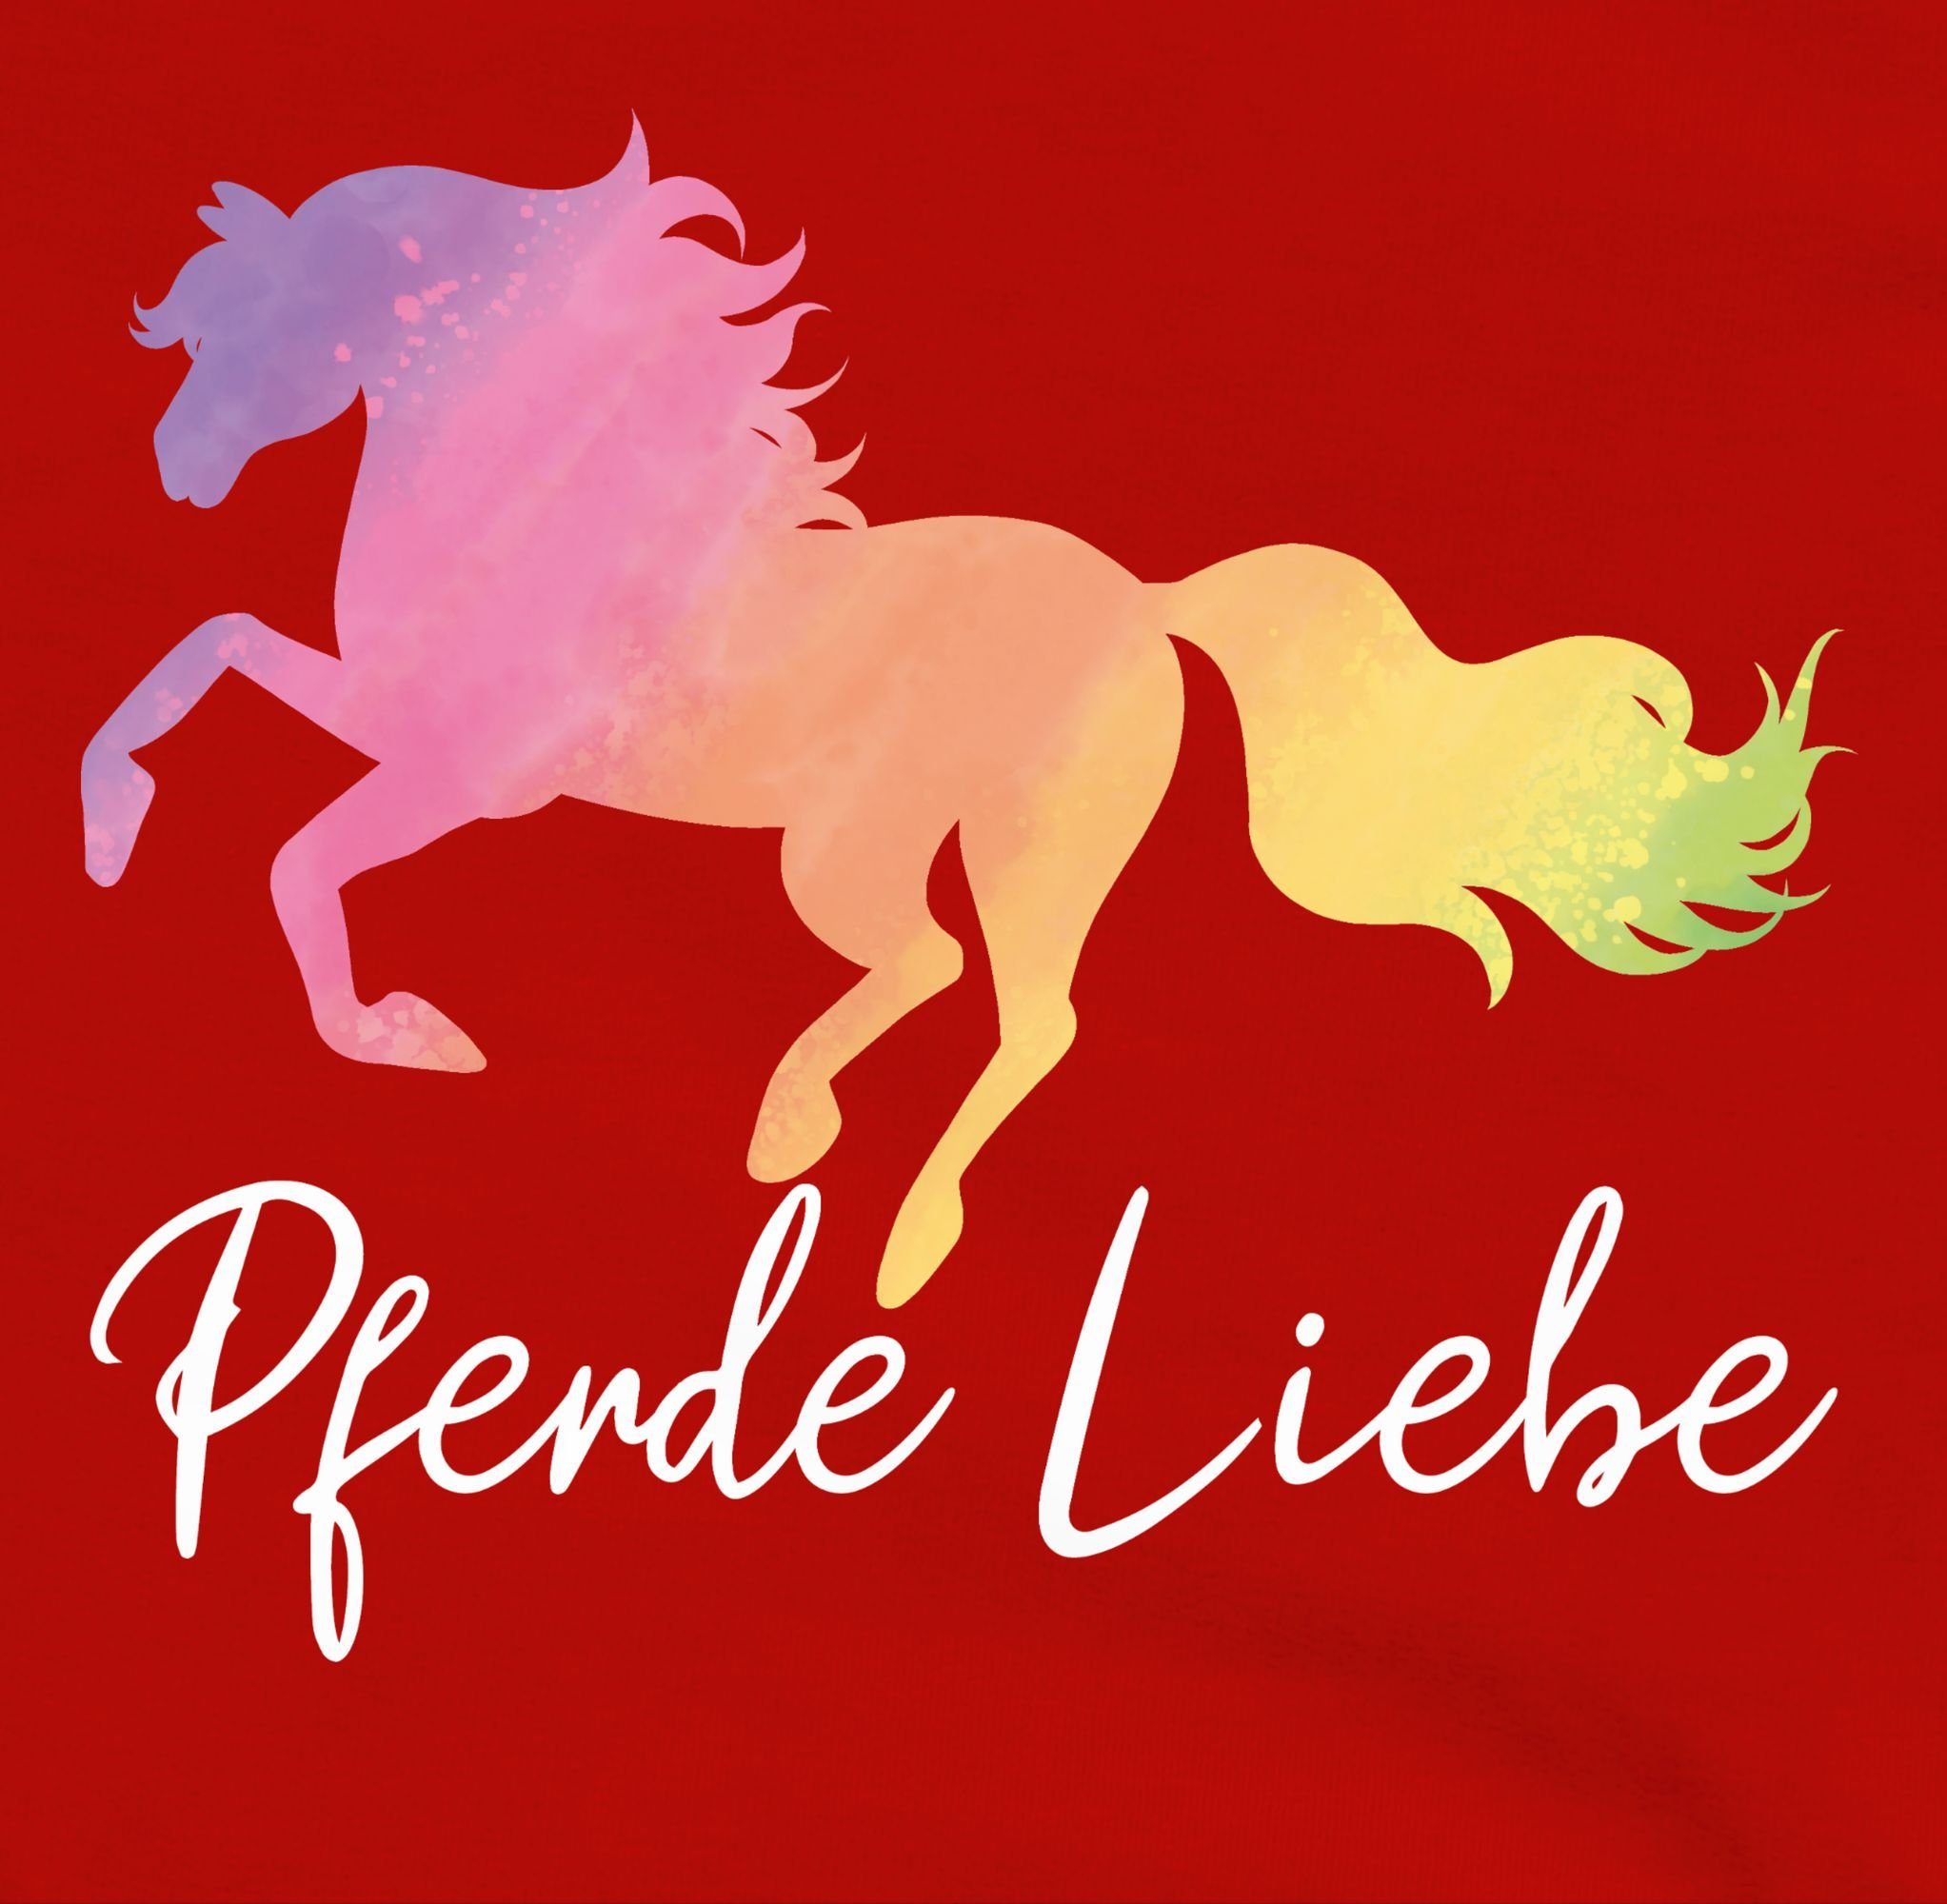 Liebe Pferde Pferd buntem mit Rot/Schwarz 2 Hoodie Pferd Shirtracer